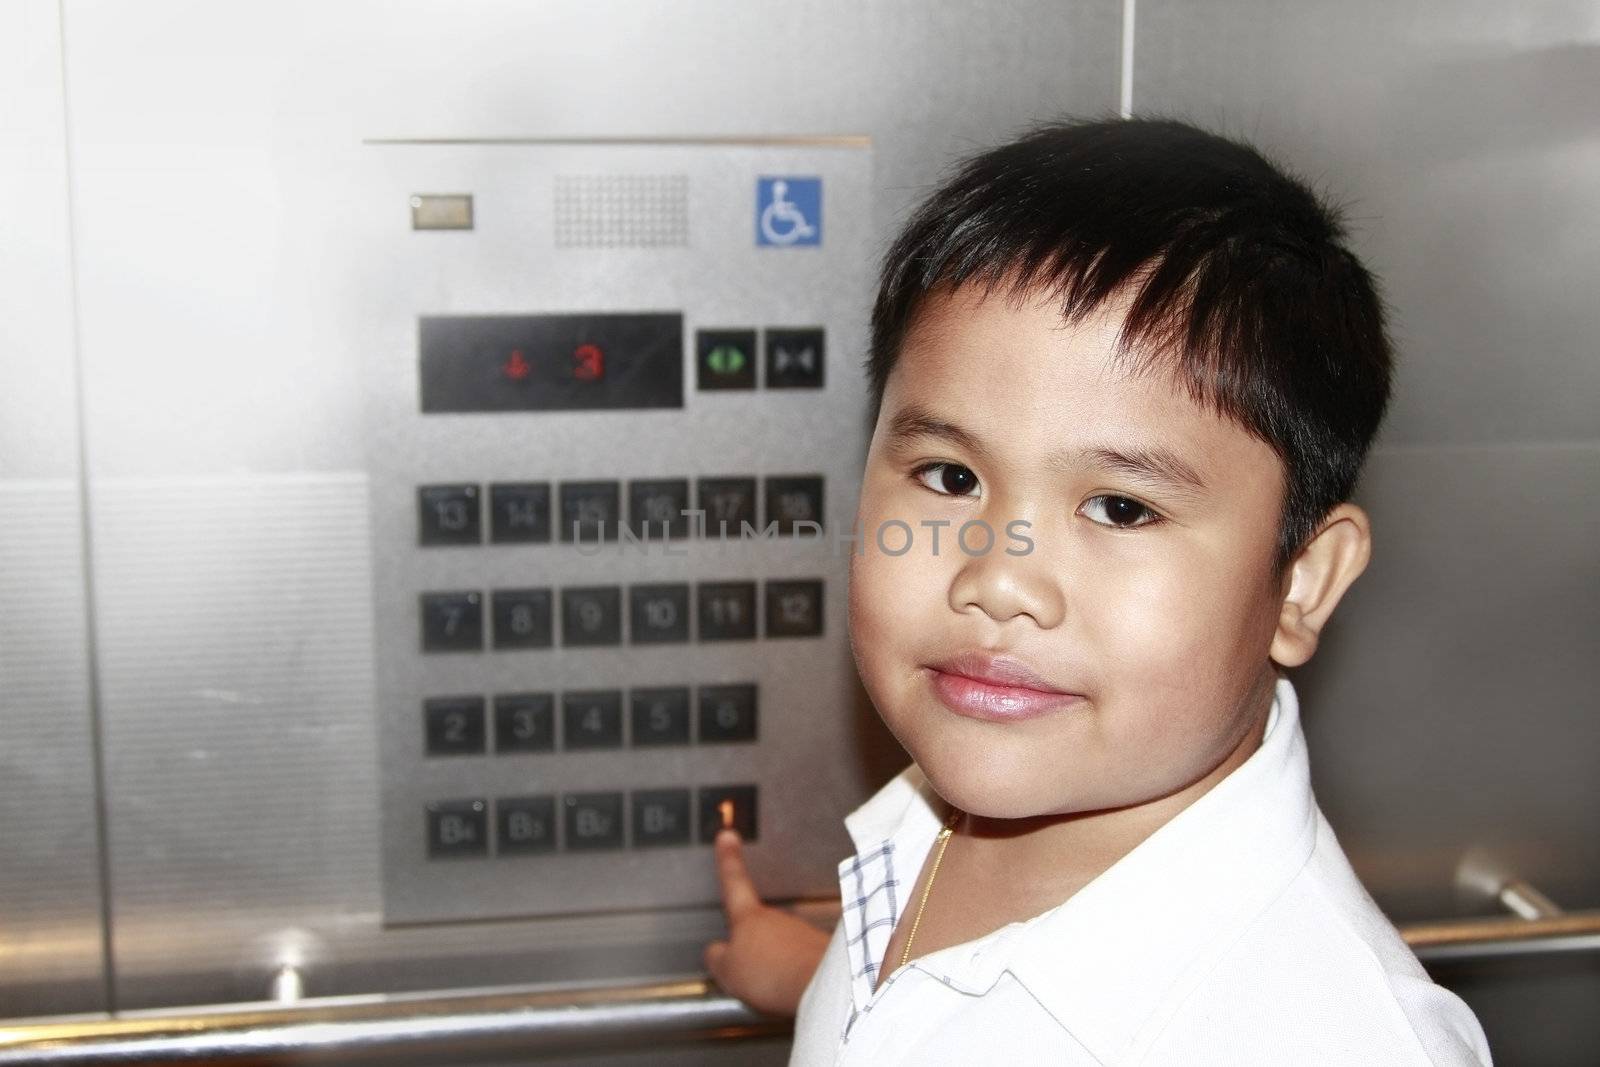 Portrait of asian boy inside an elevator.